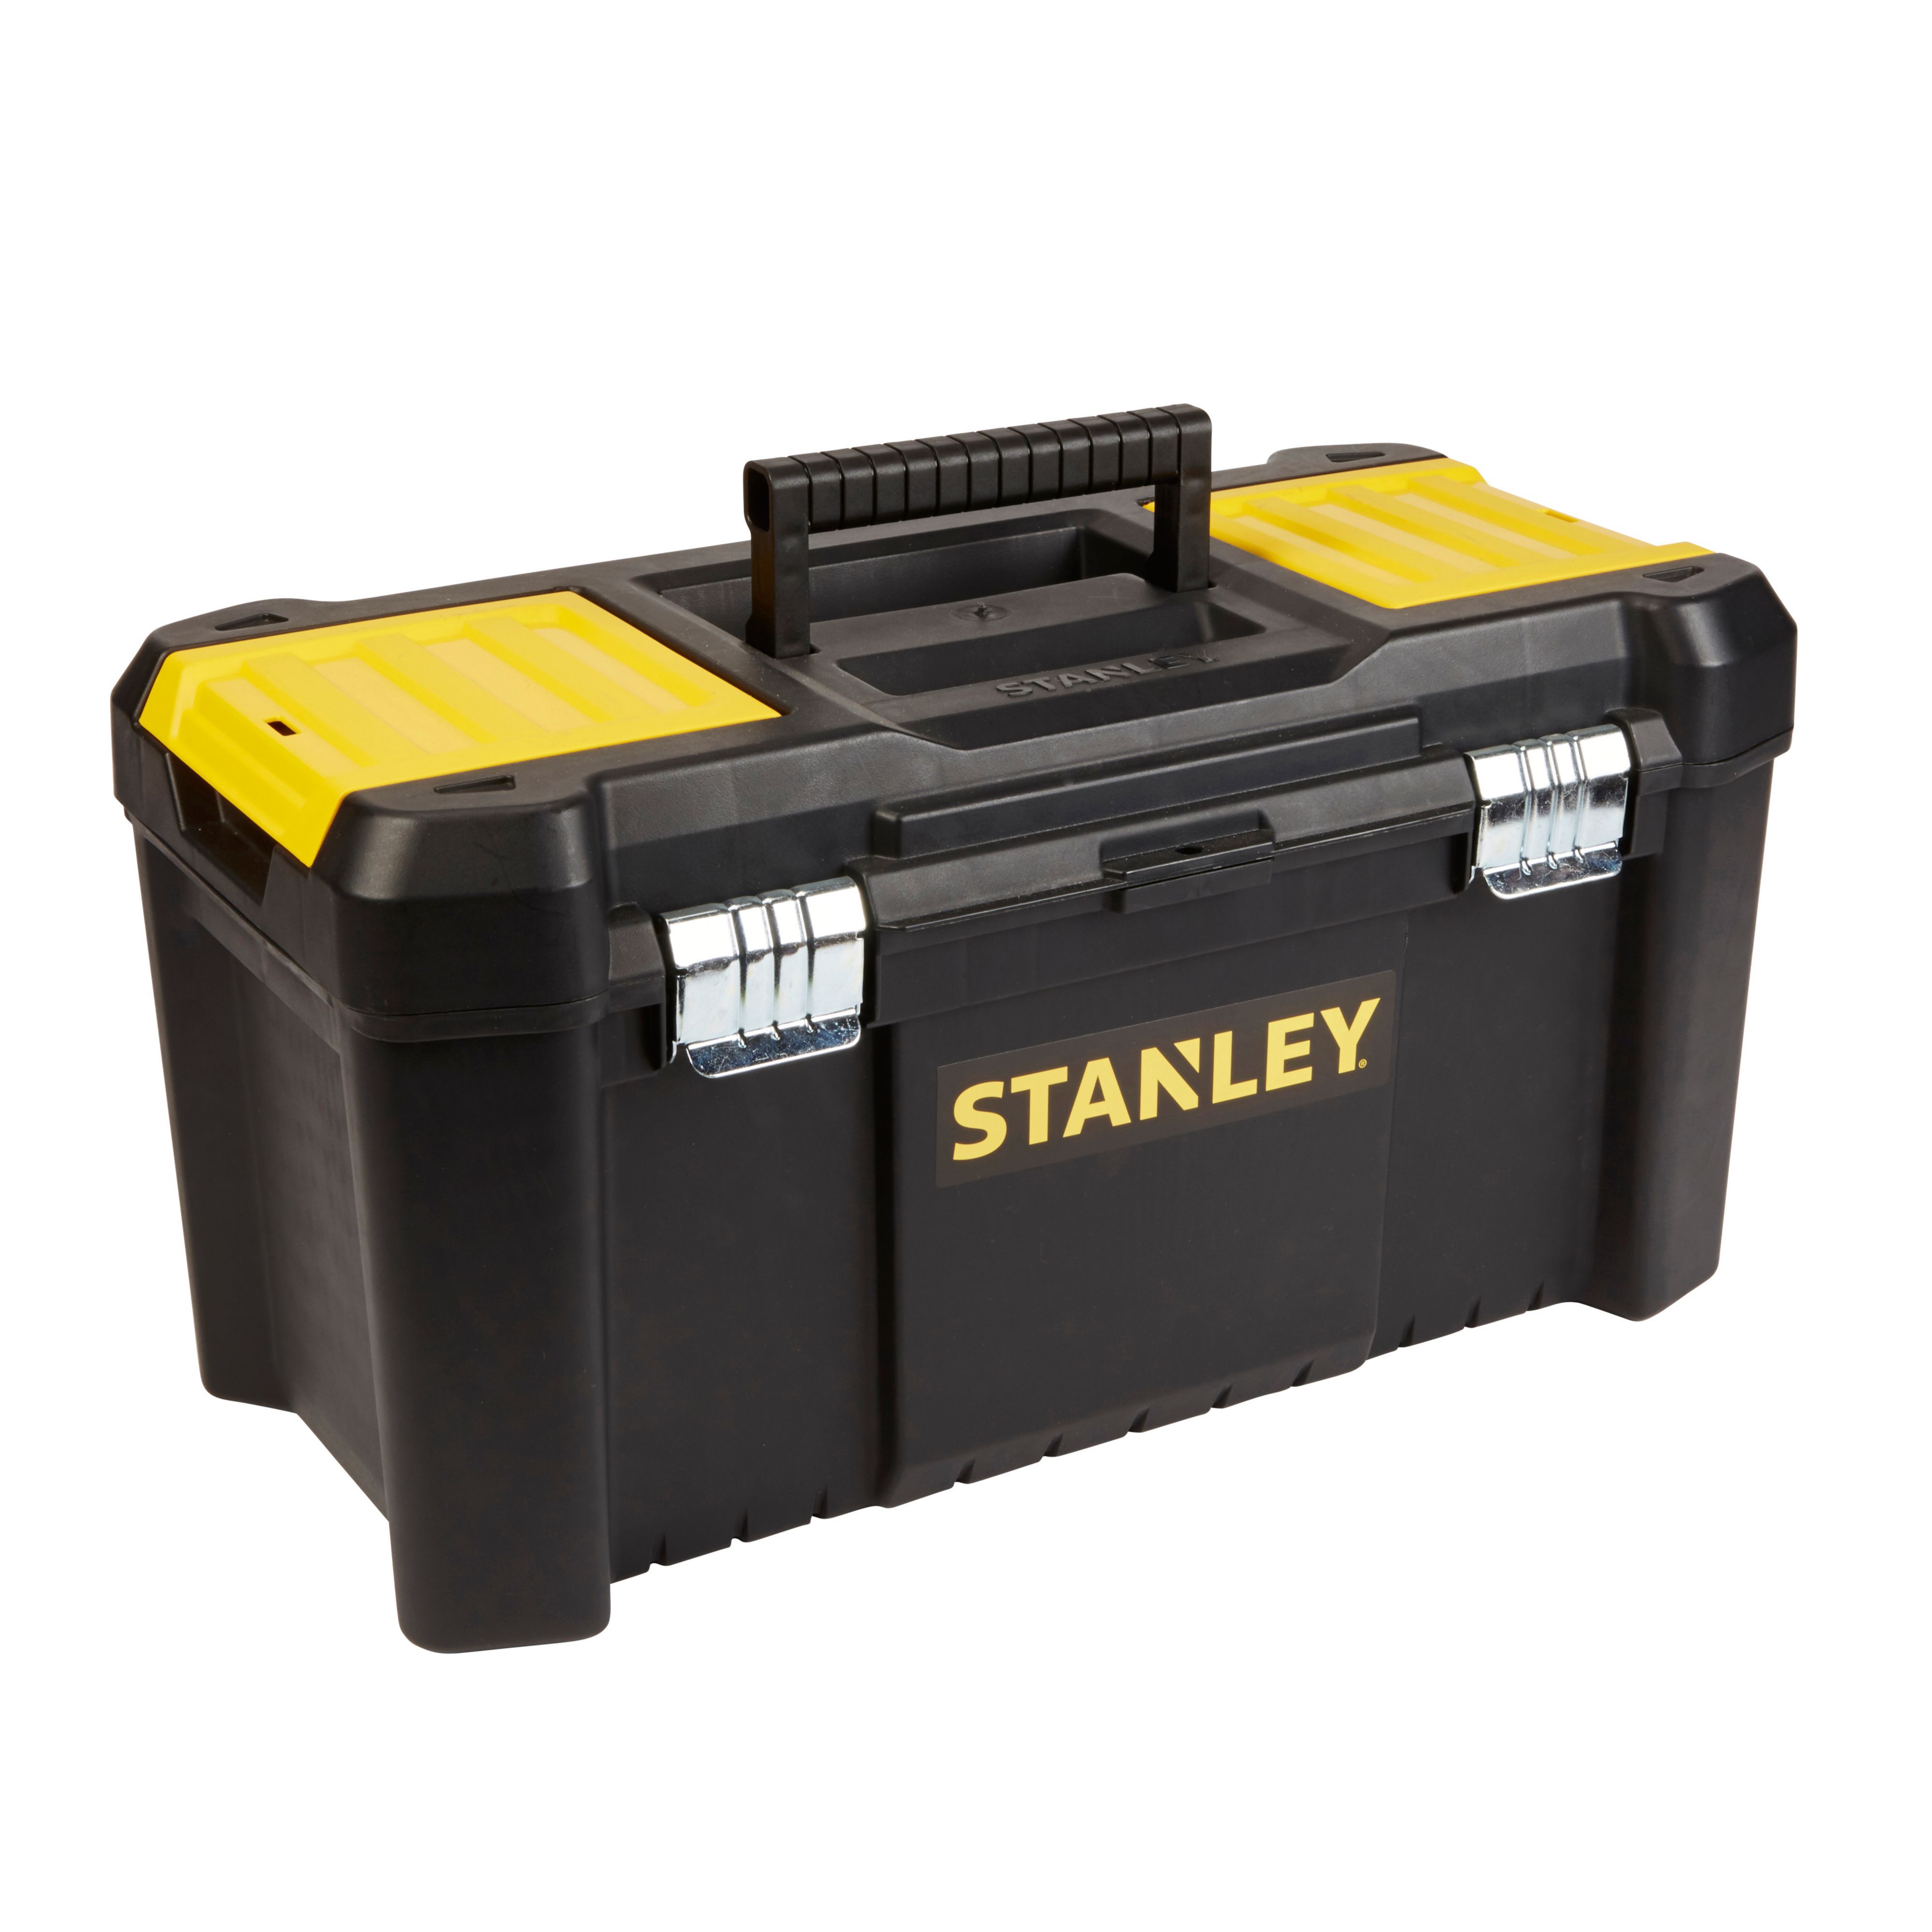 Stanley 482mm Metal & plastic Toolbox